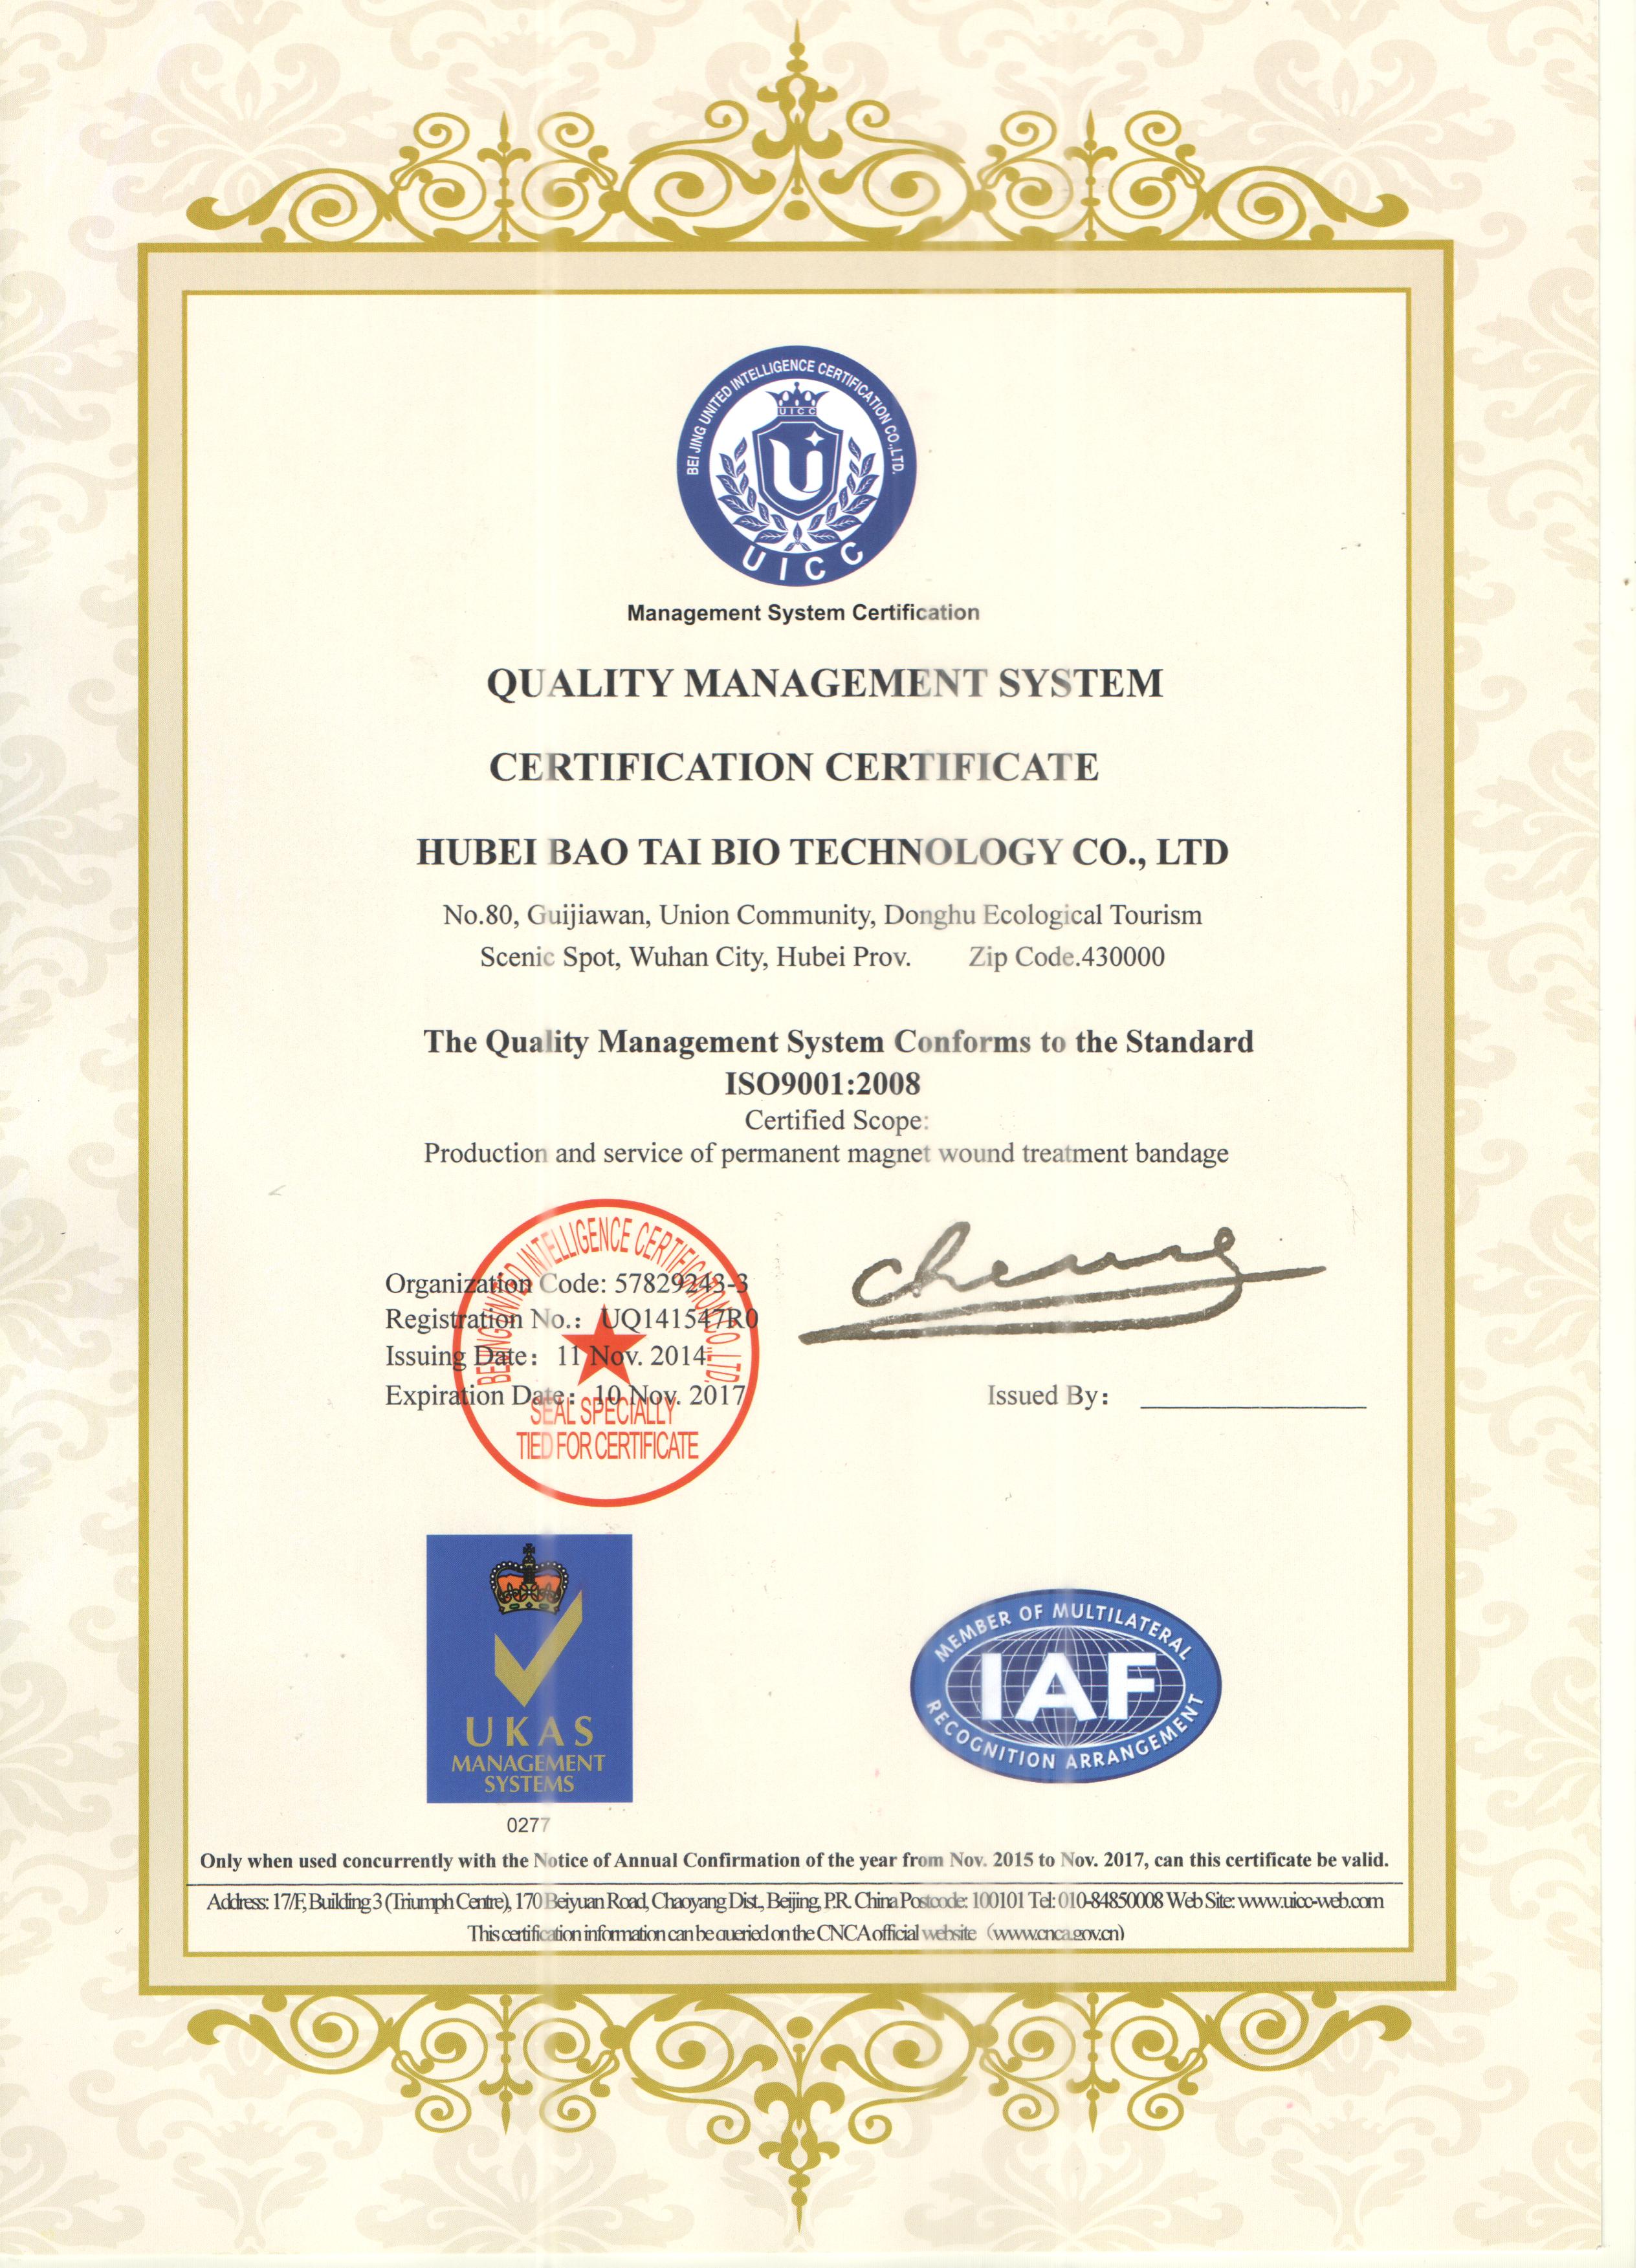  热烈庆祝我公司获得质量管理体系符合ISO9001:2008标准认证